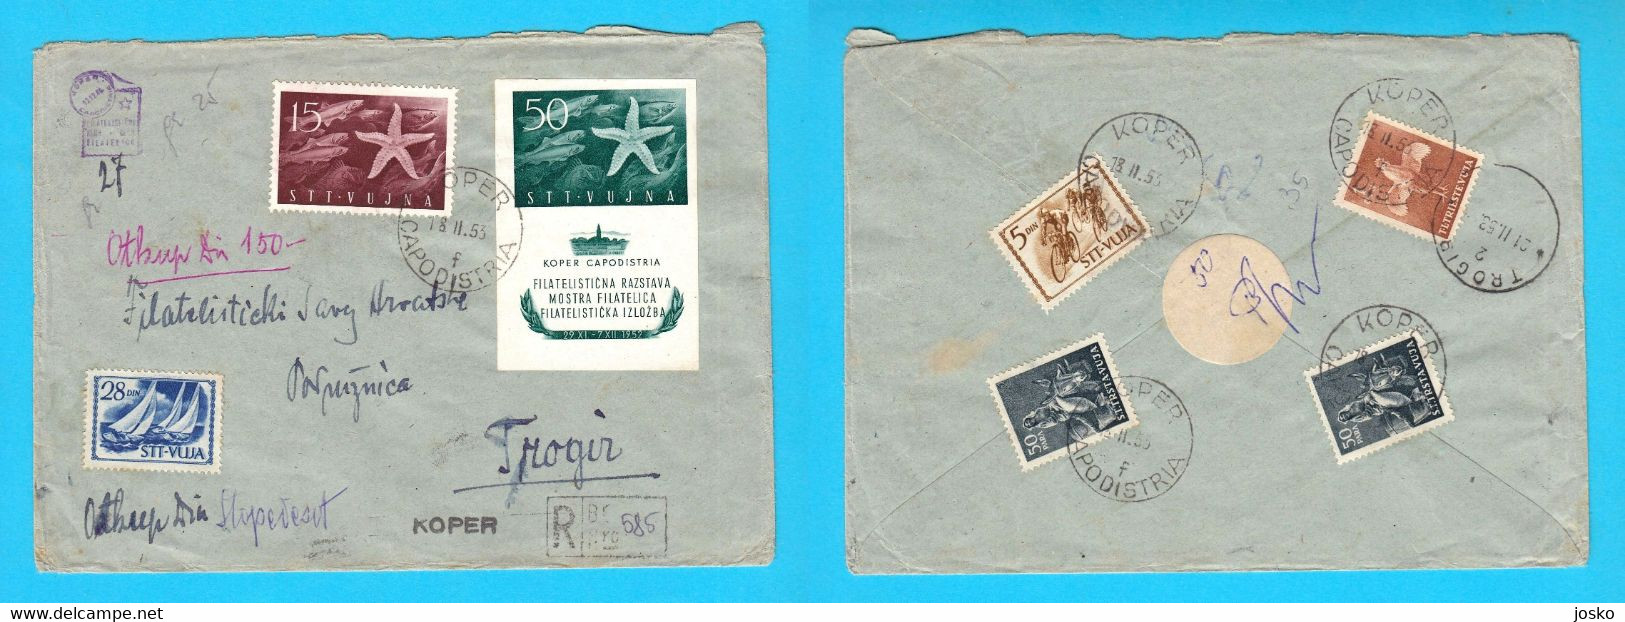 TRIESTE ZONA B STT VUJNA VUJA Registered Letter Travelled 1953 Koper Capodistria Yugoslavia Slovenia Istria Italy Italia - Poststempel